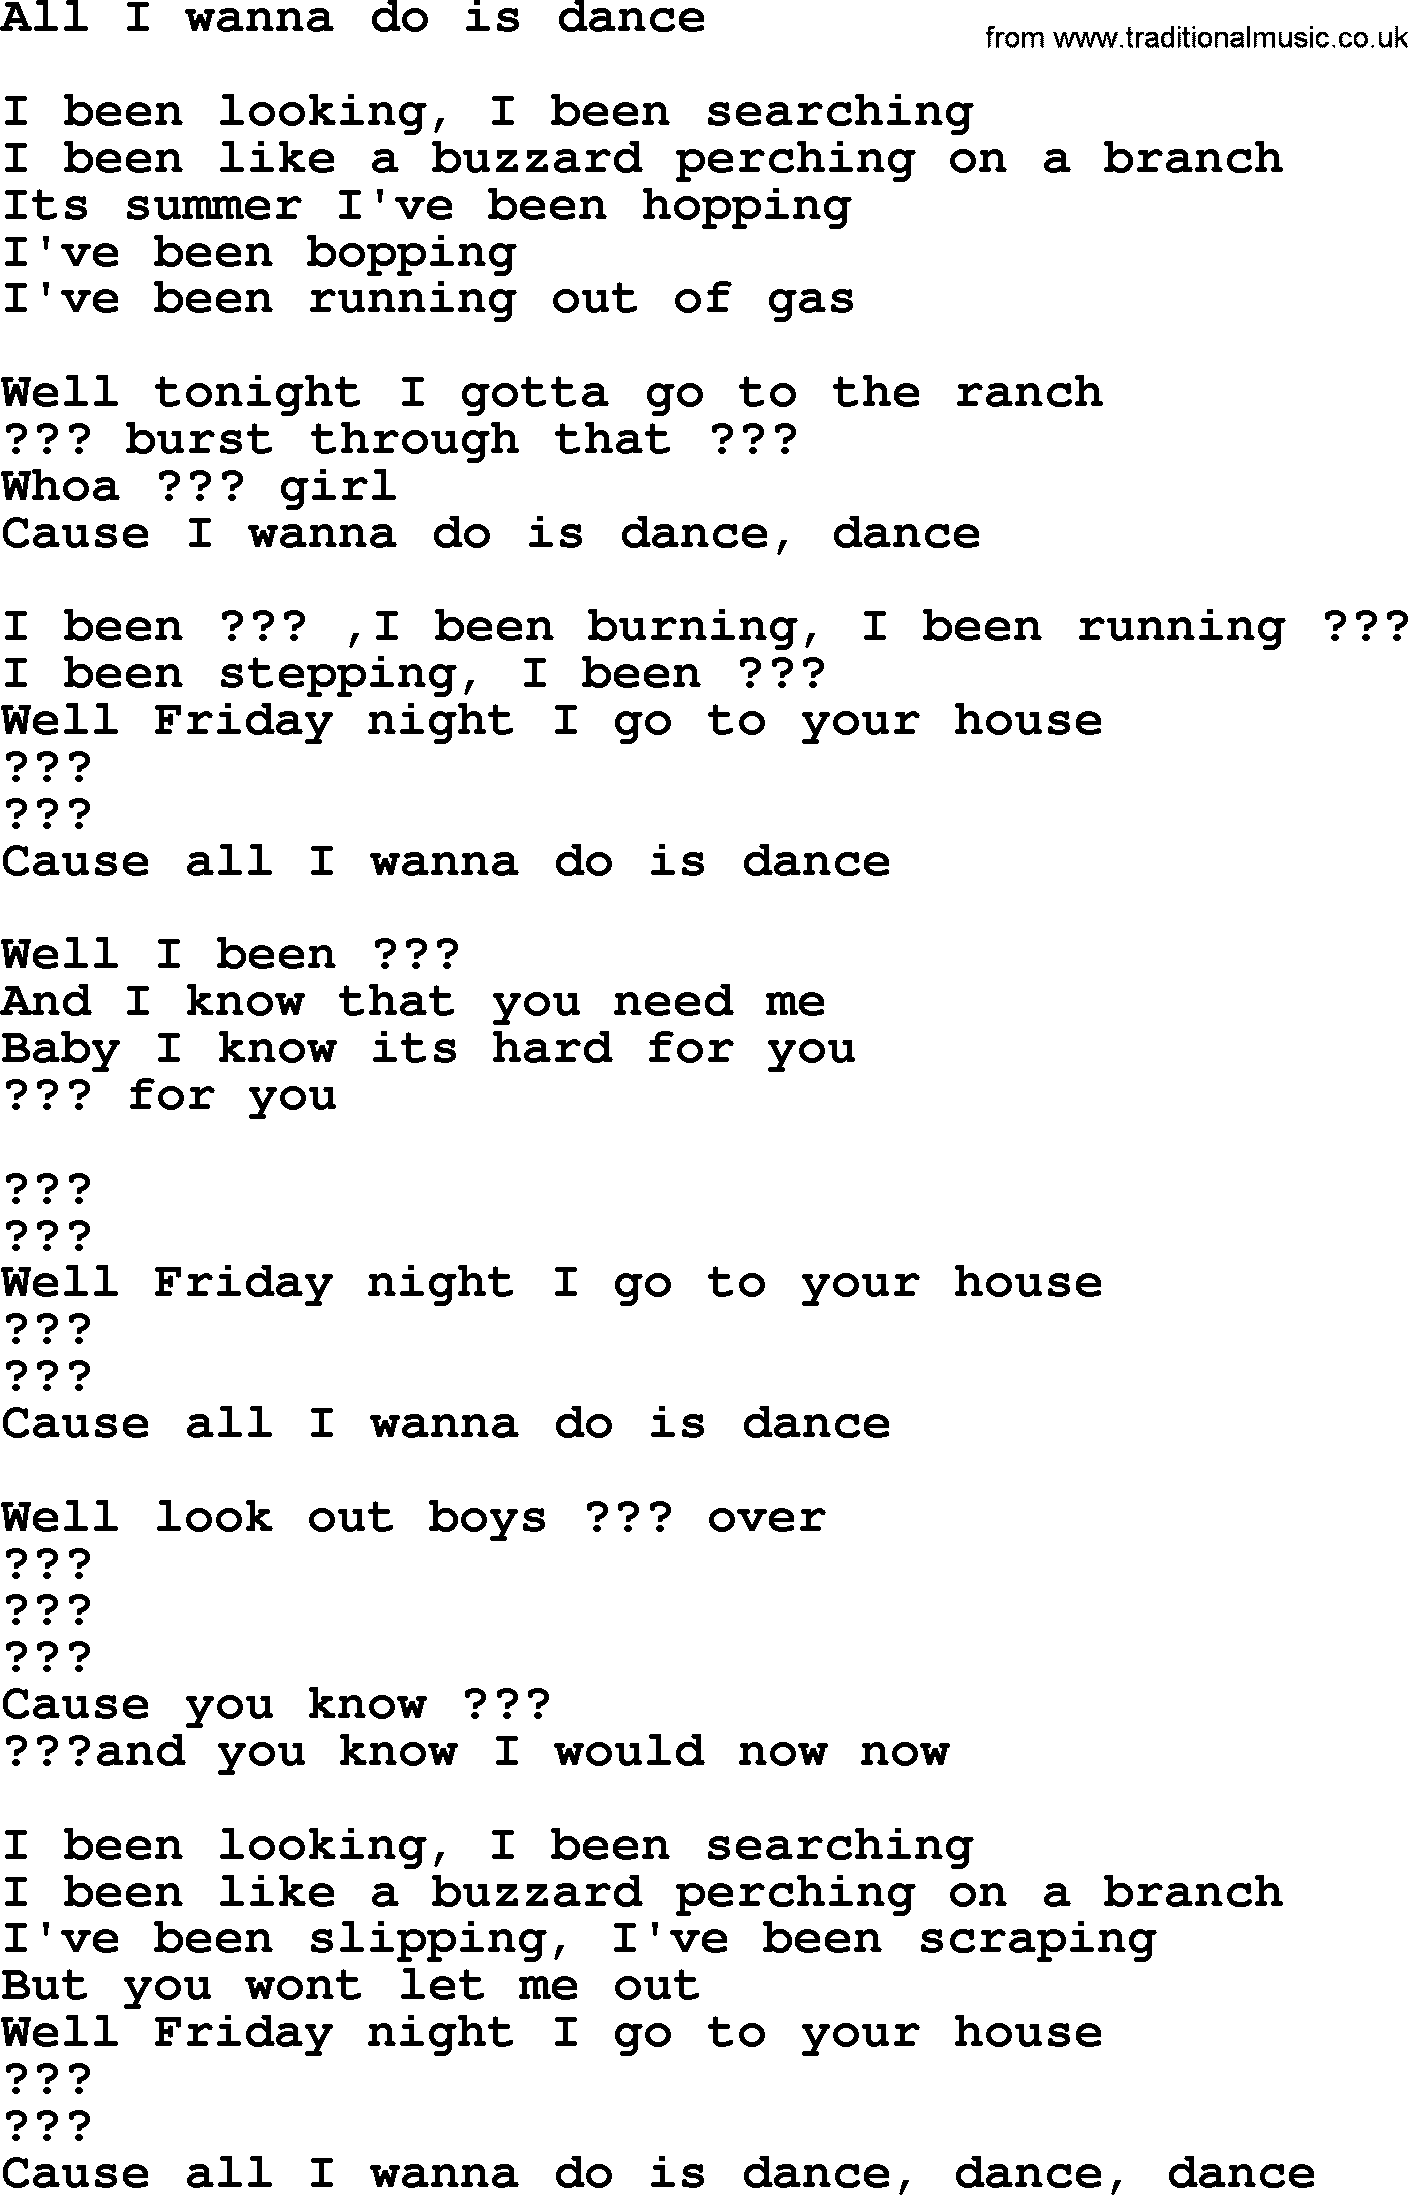 Bruce Springsteen song: All I Wanna Do Is Dance lyrics